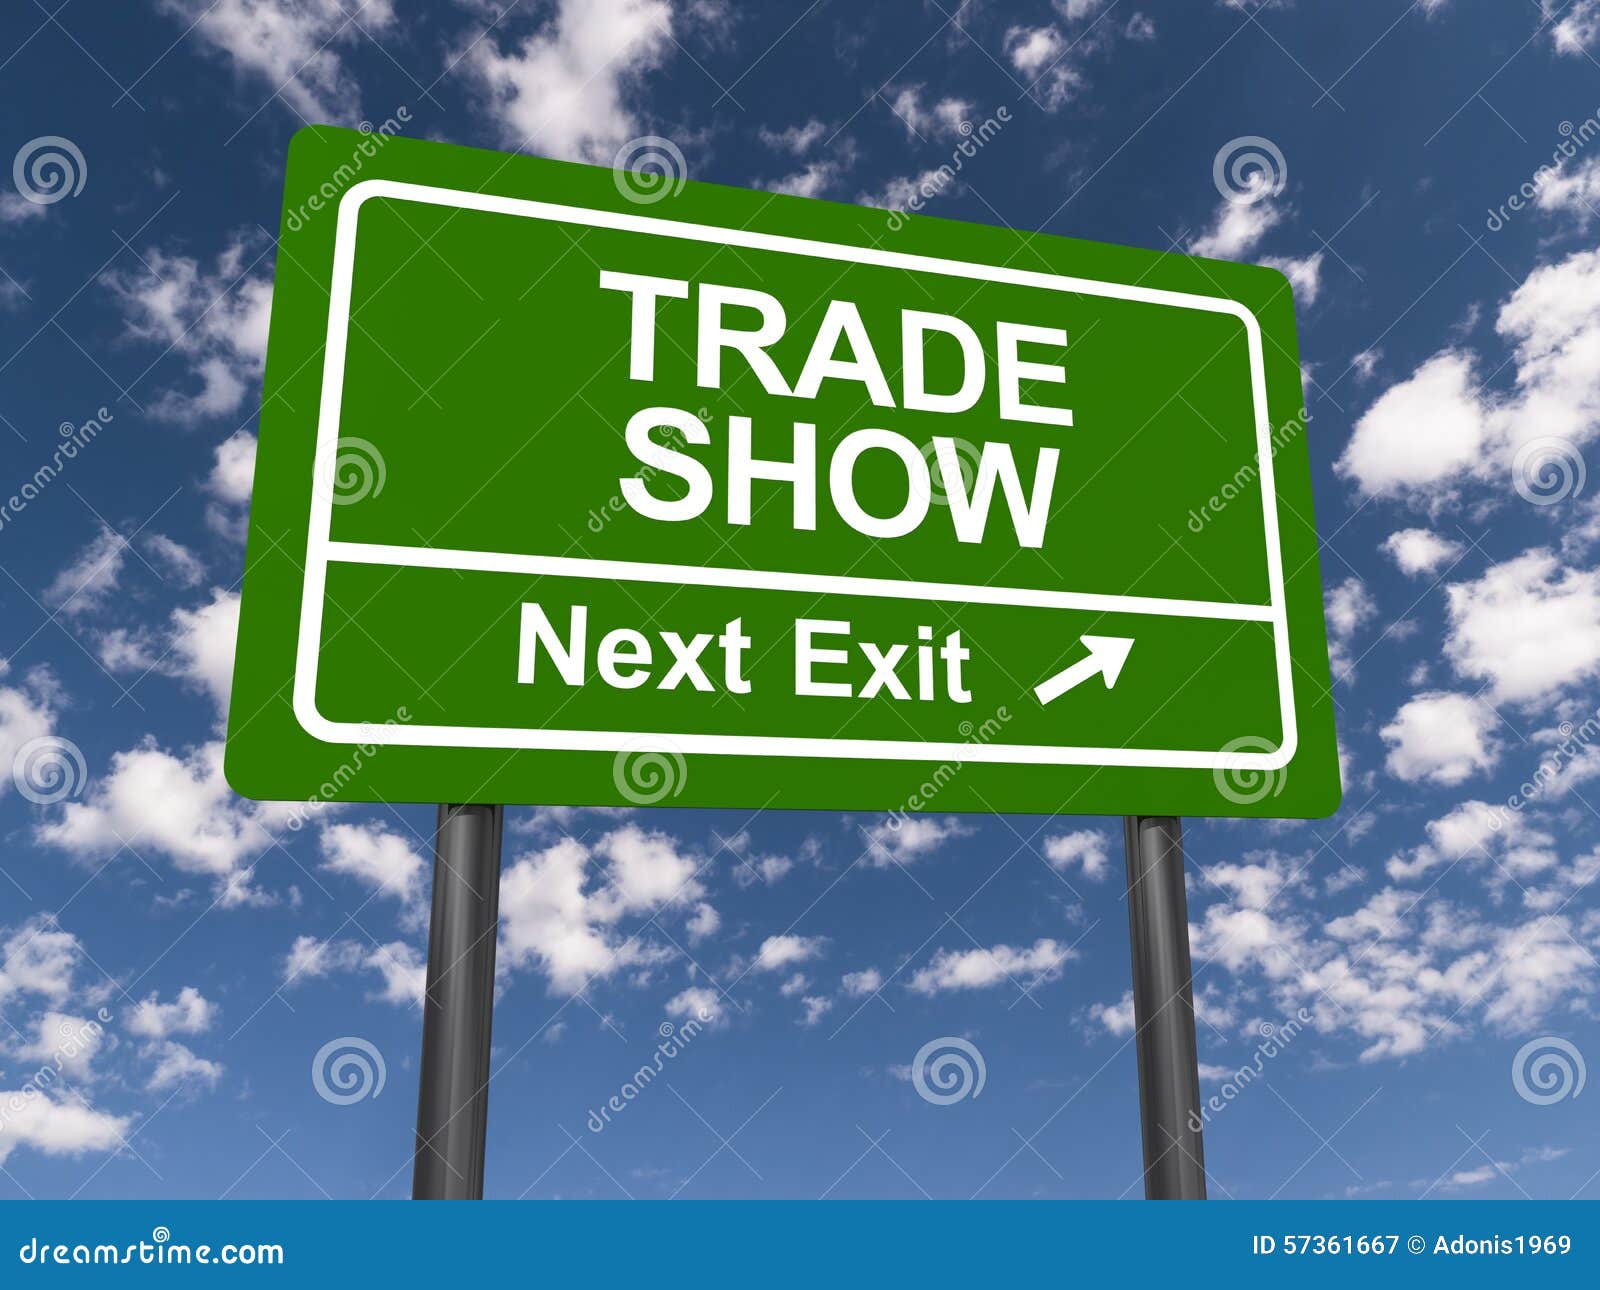 trade show next exit